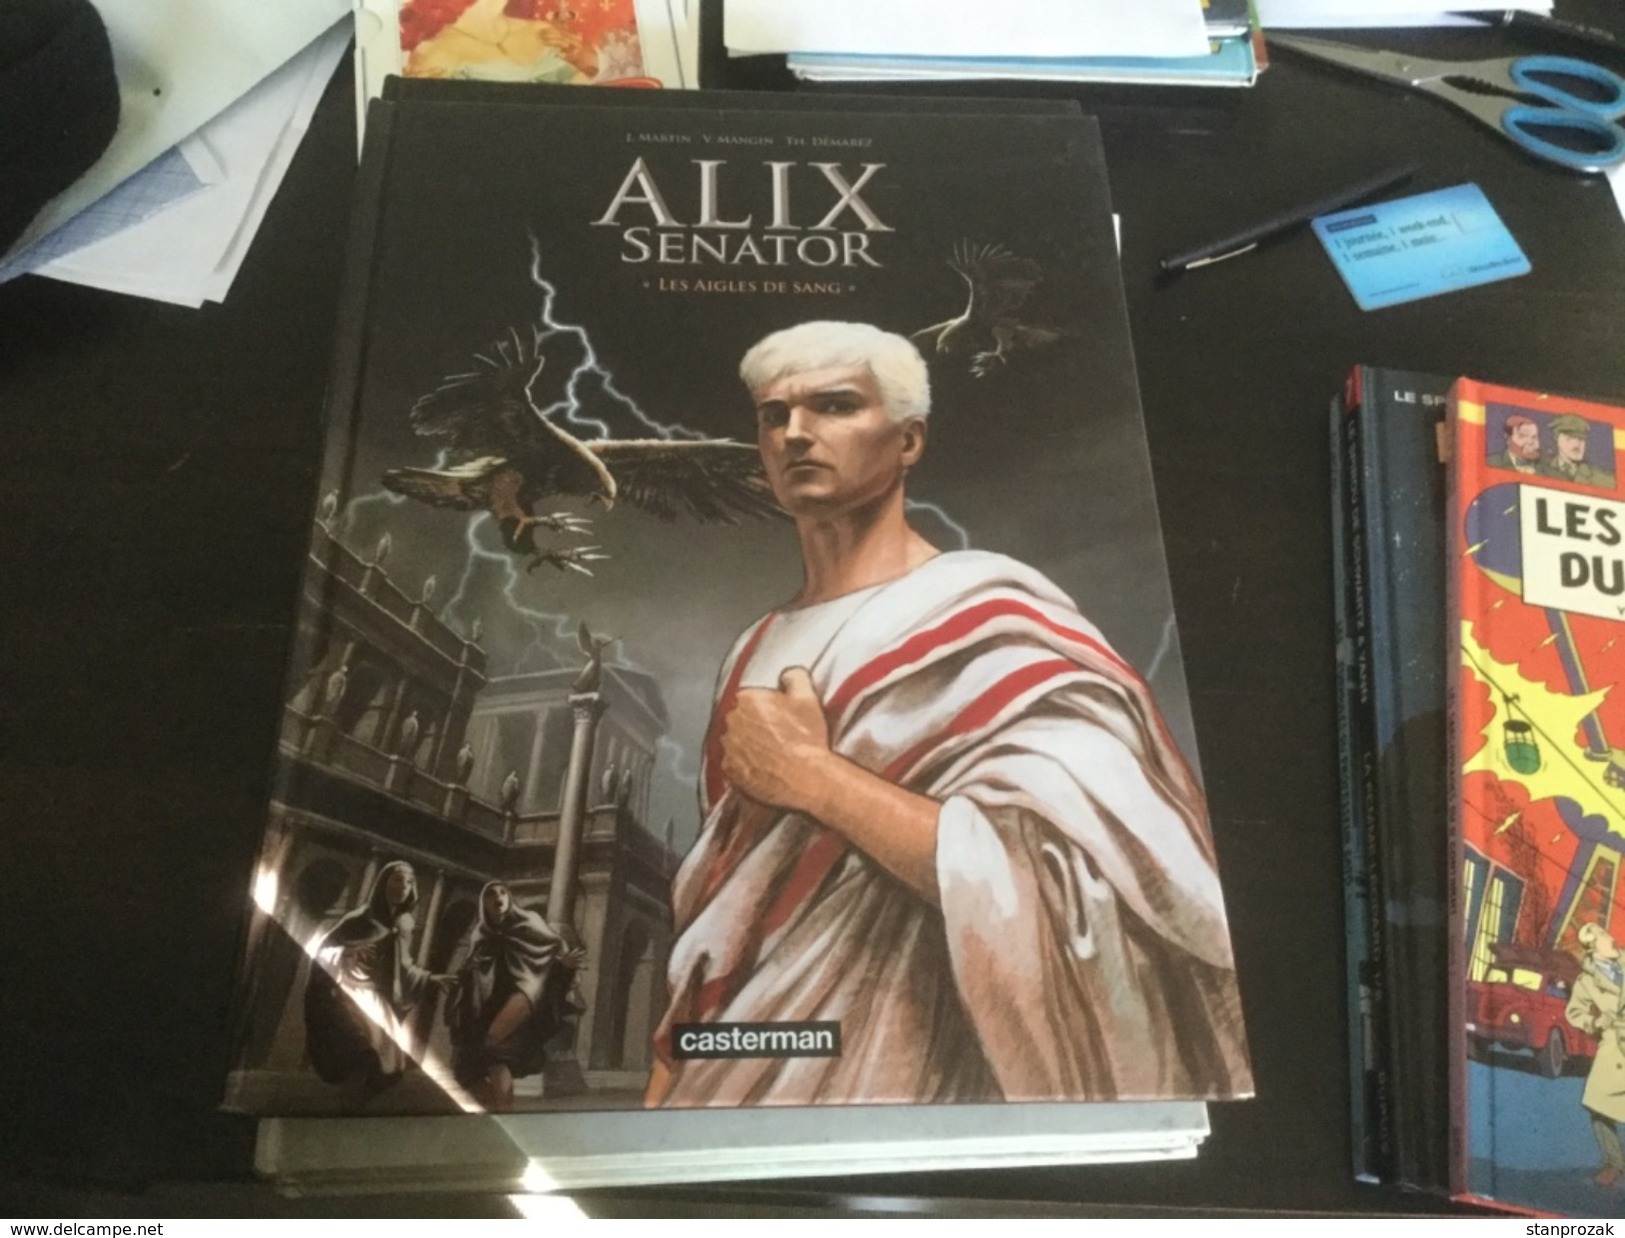 Alex Senator Les Aigles De Sang - Alix